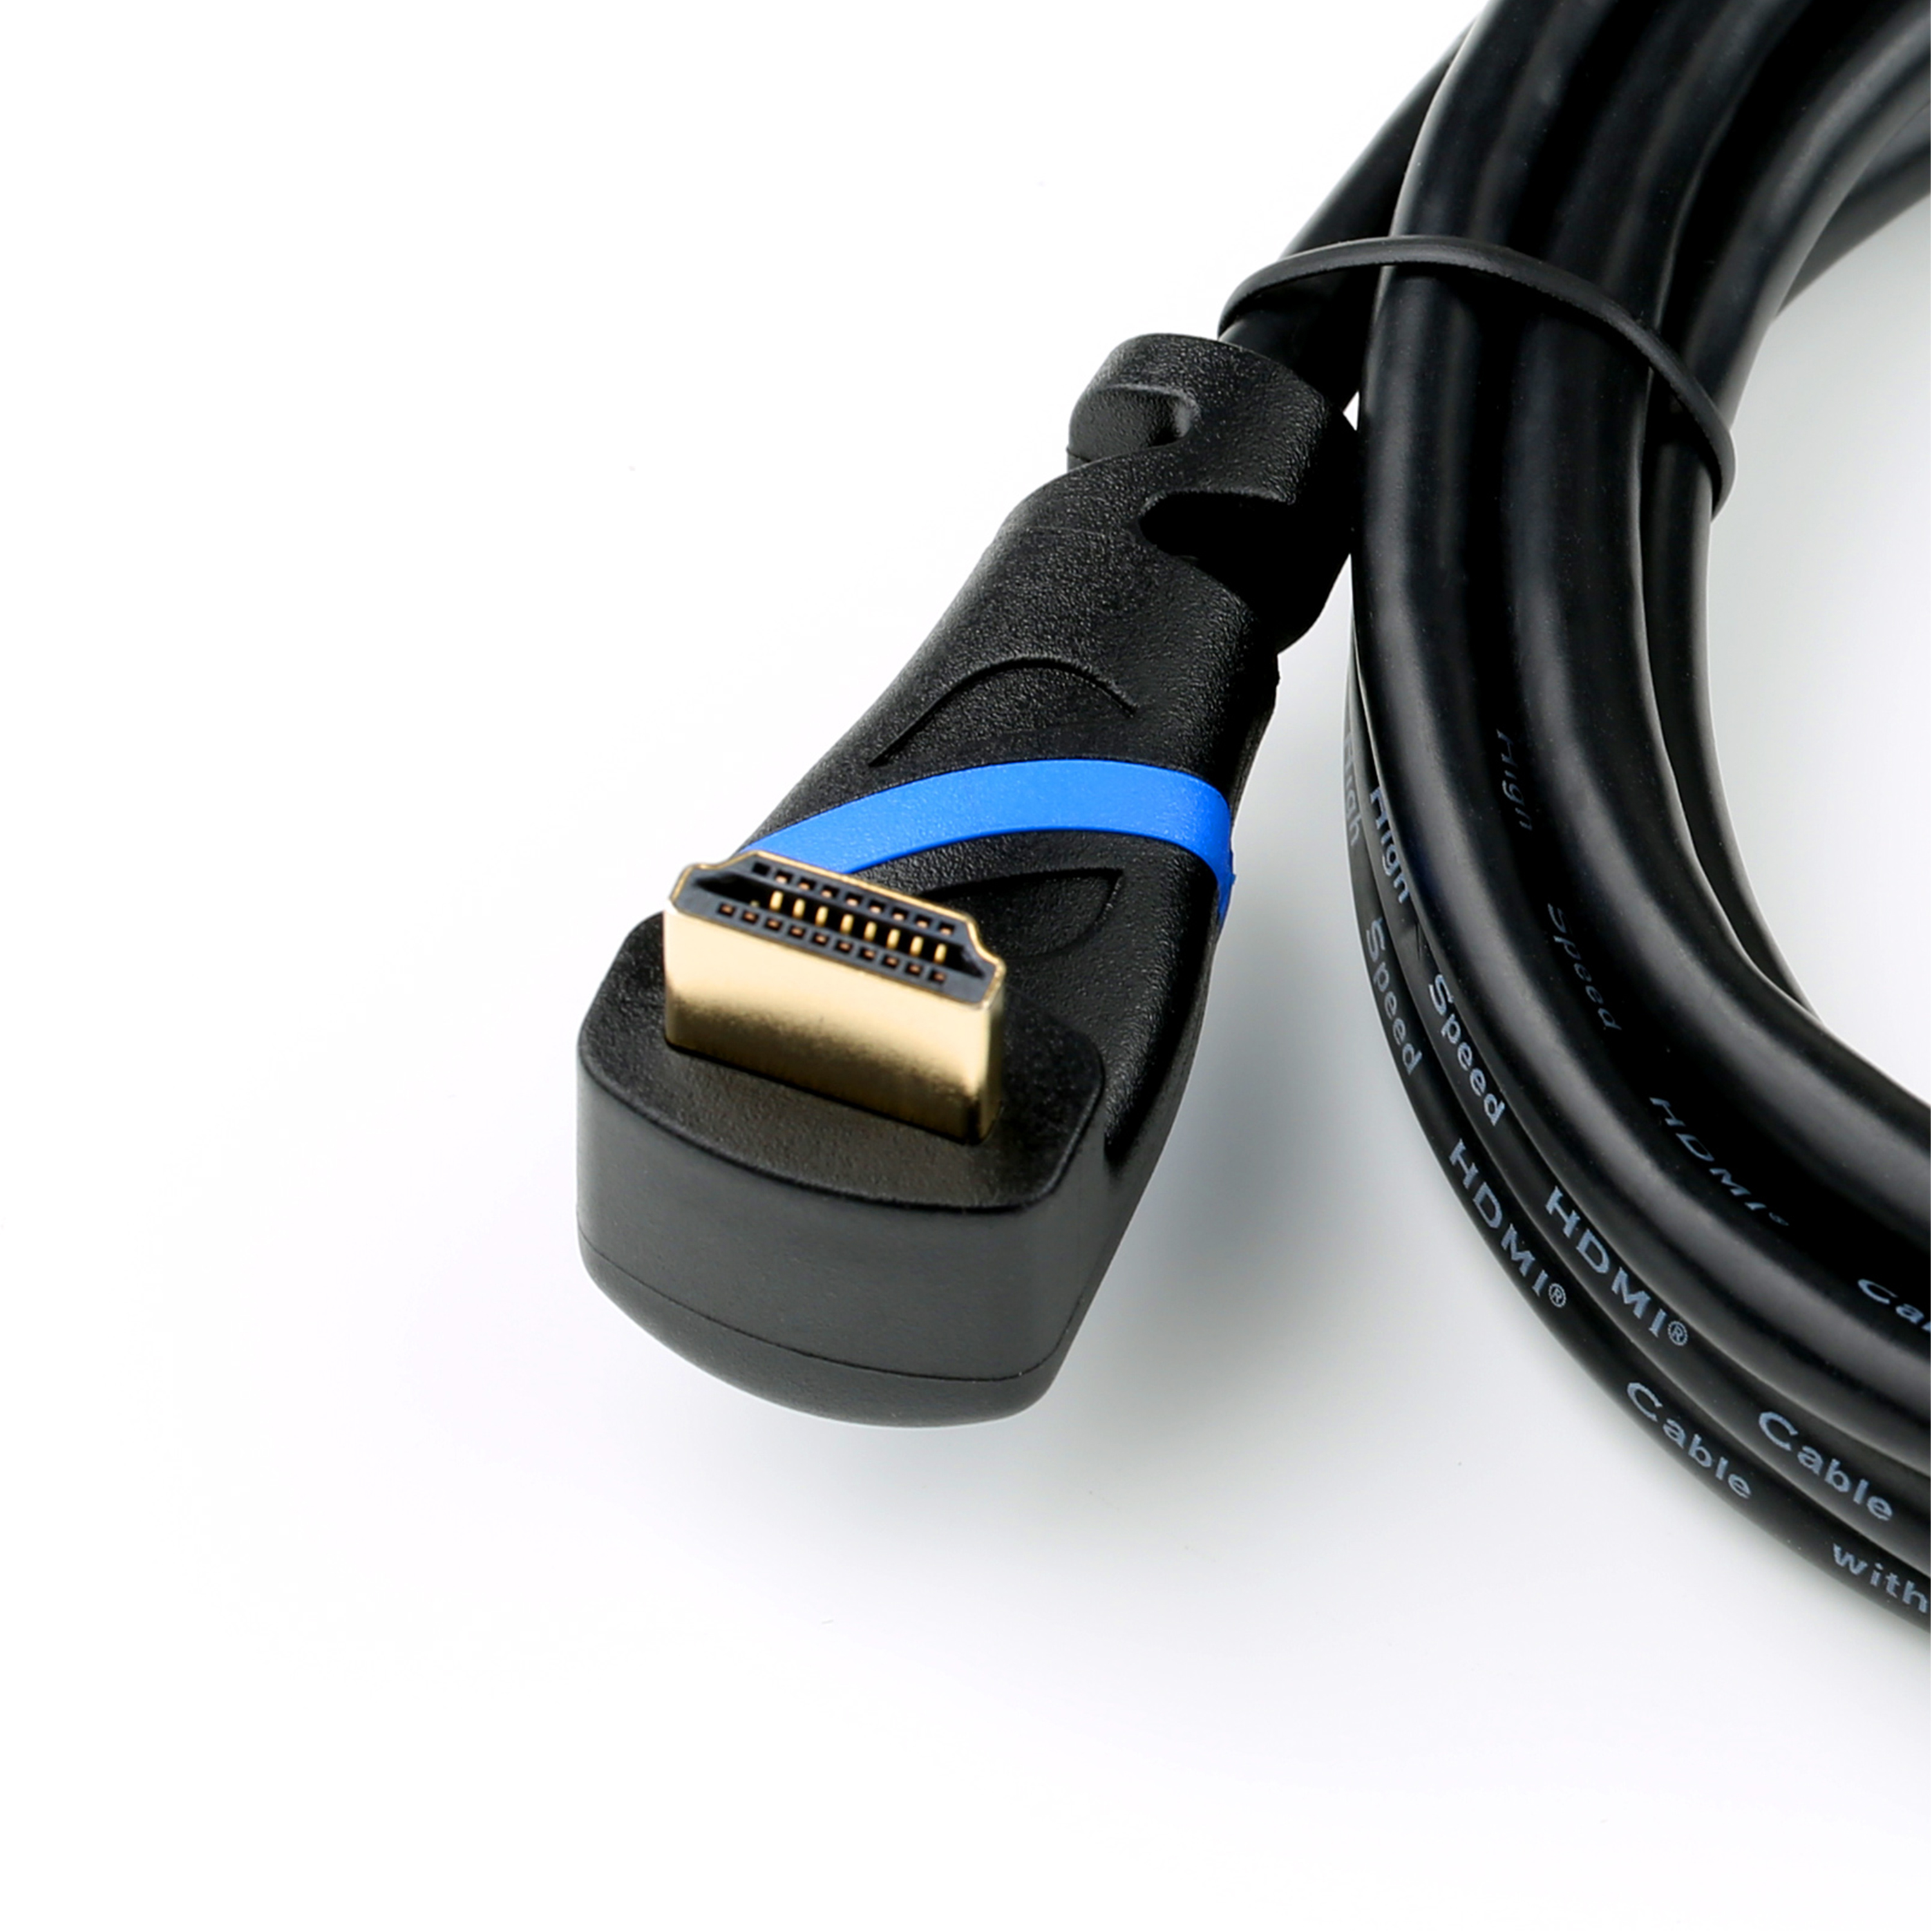 CSL HDMI 2.0 Kabel, gewinkelt, schwarz/blau Kabel, 2m HDMI